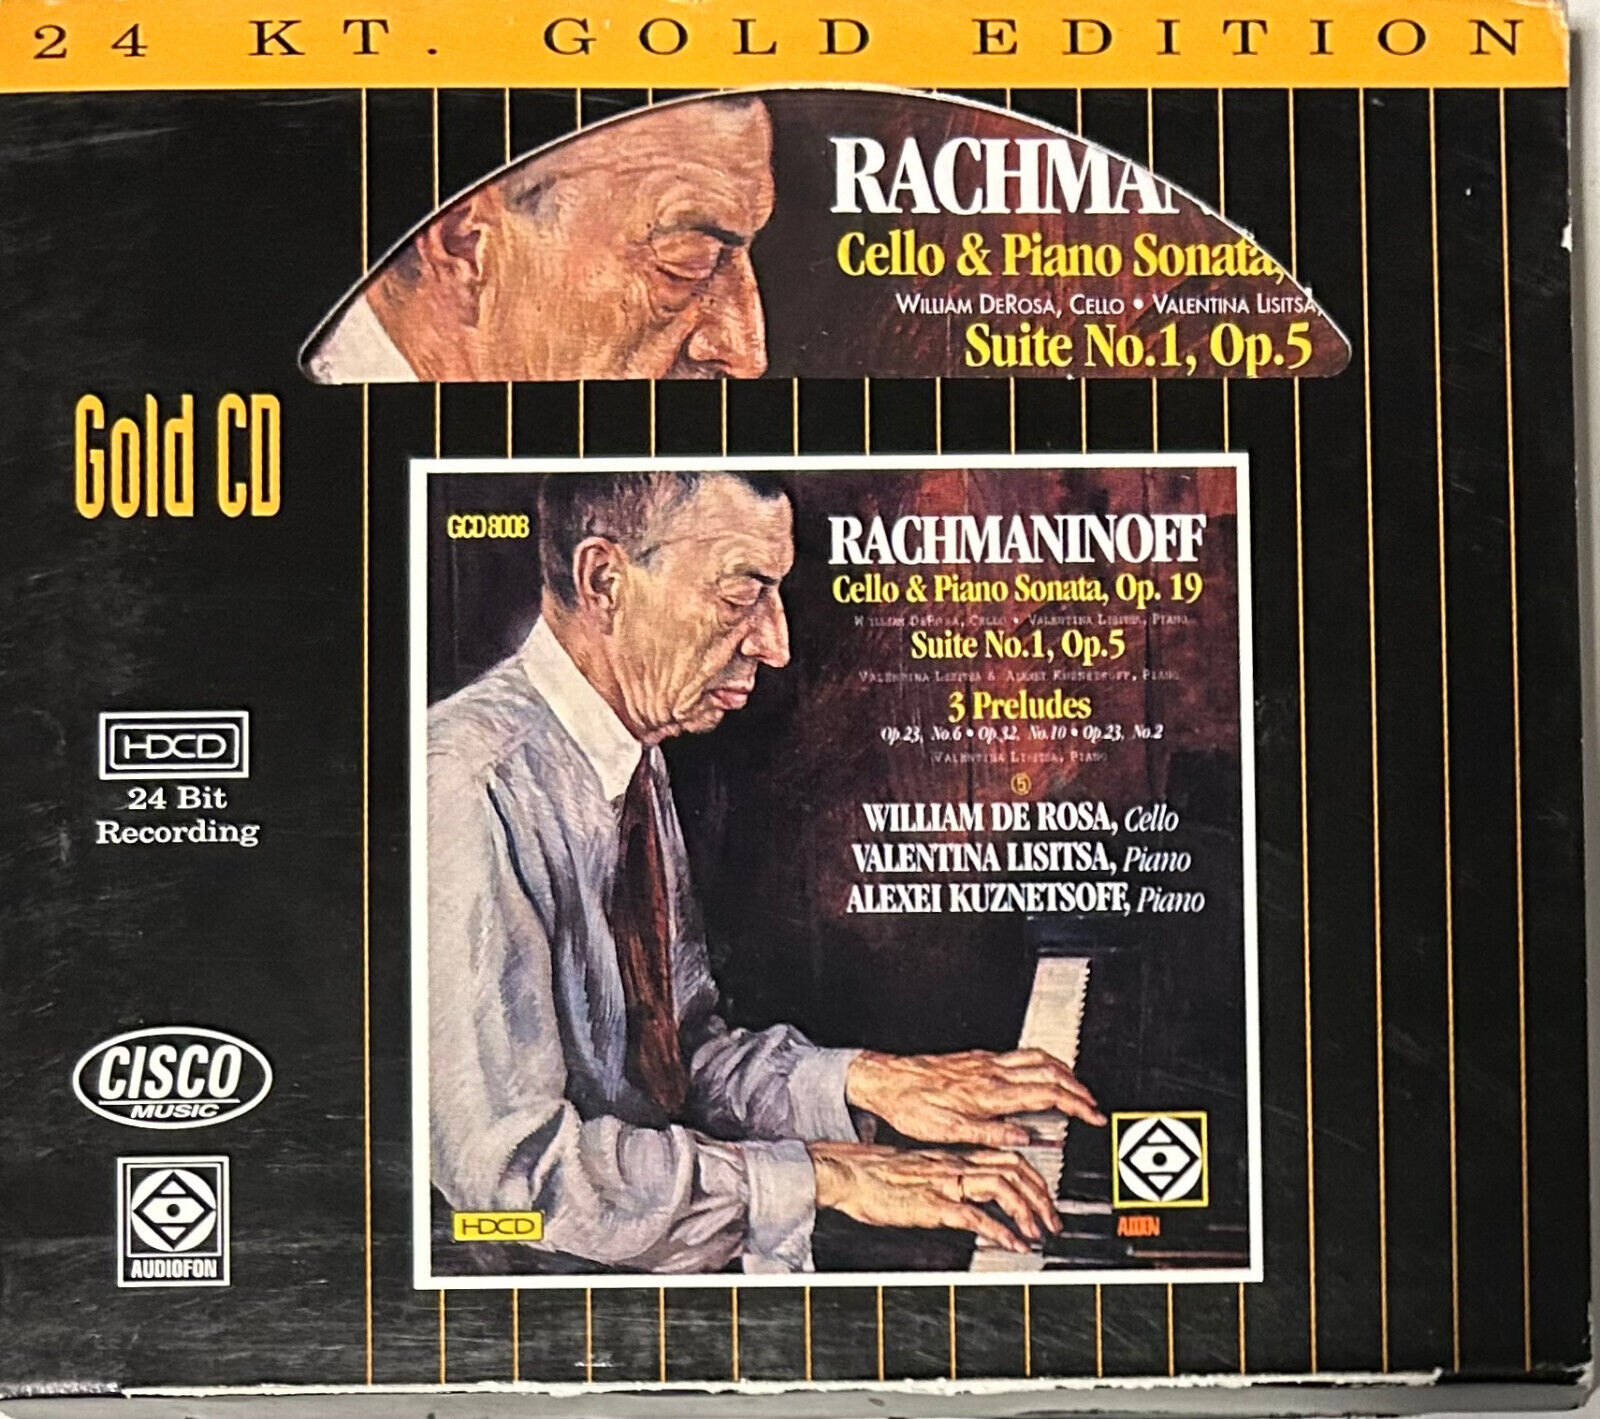 CISCO GOLD CD GCD-8008: Rachmaninoff Cello & Piano Sonatas - De Rosa, Lisitsa NM